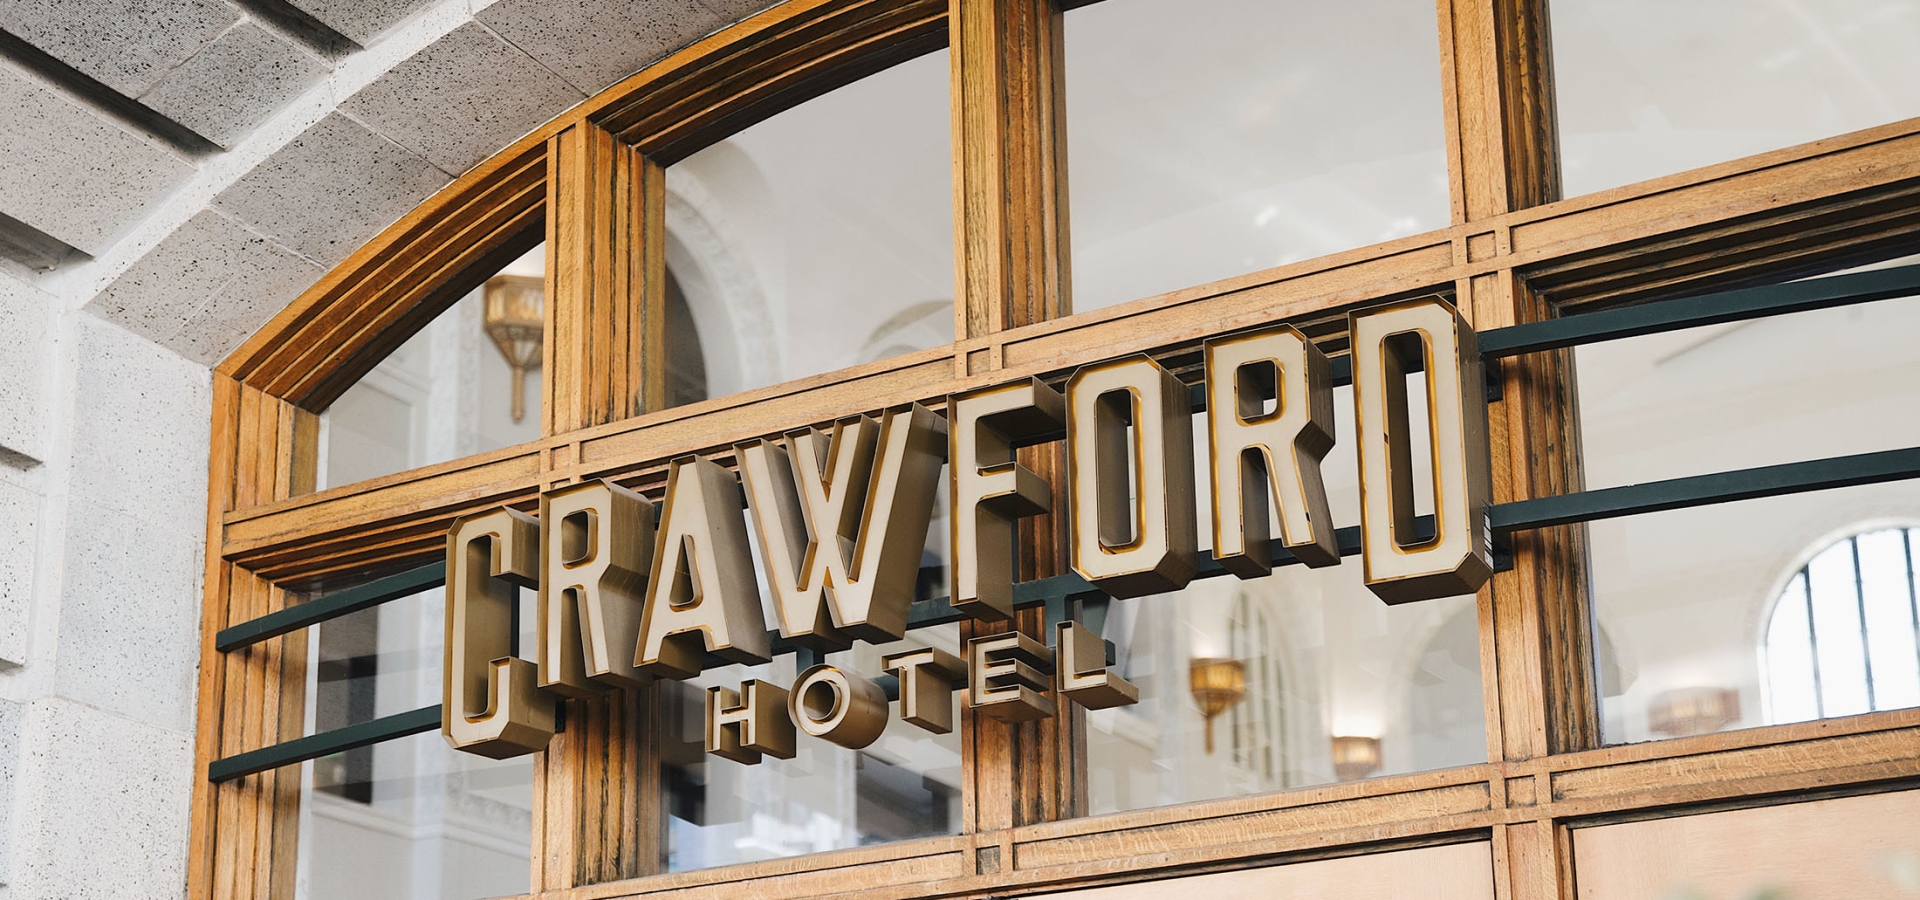 Crawford hotel